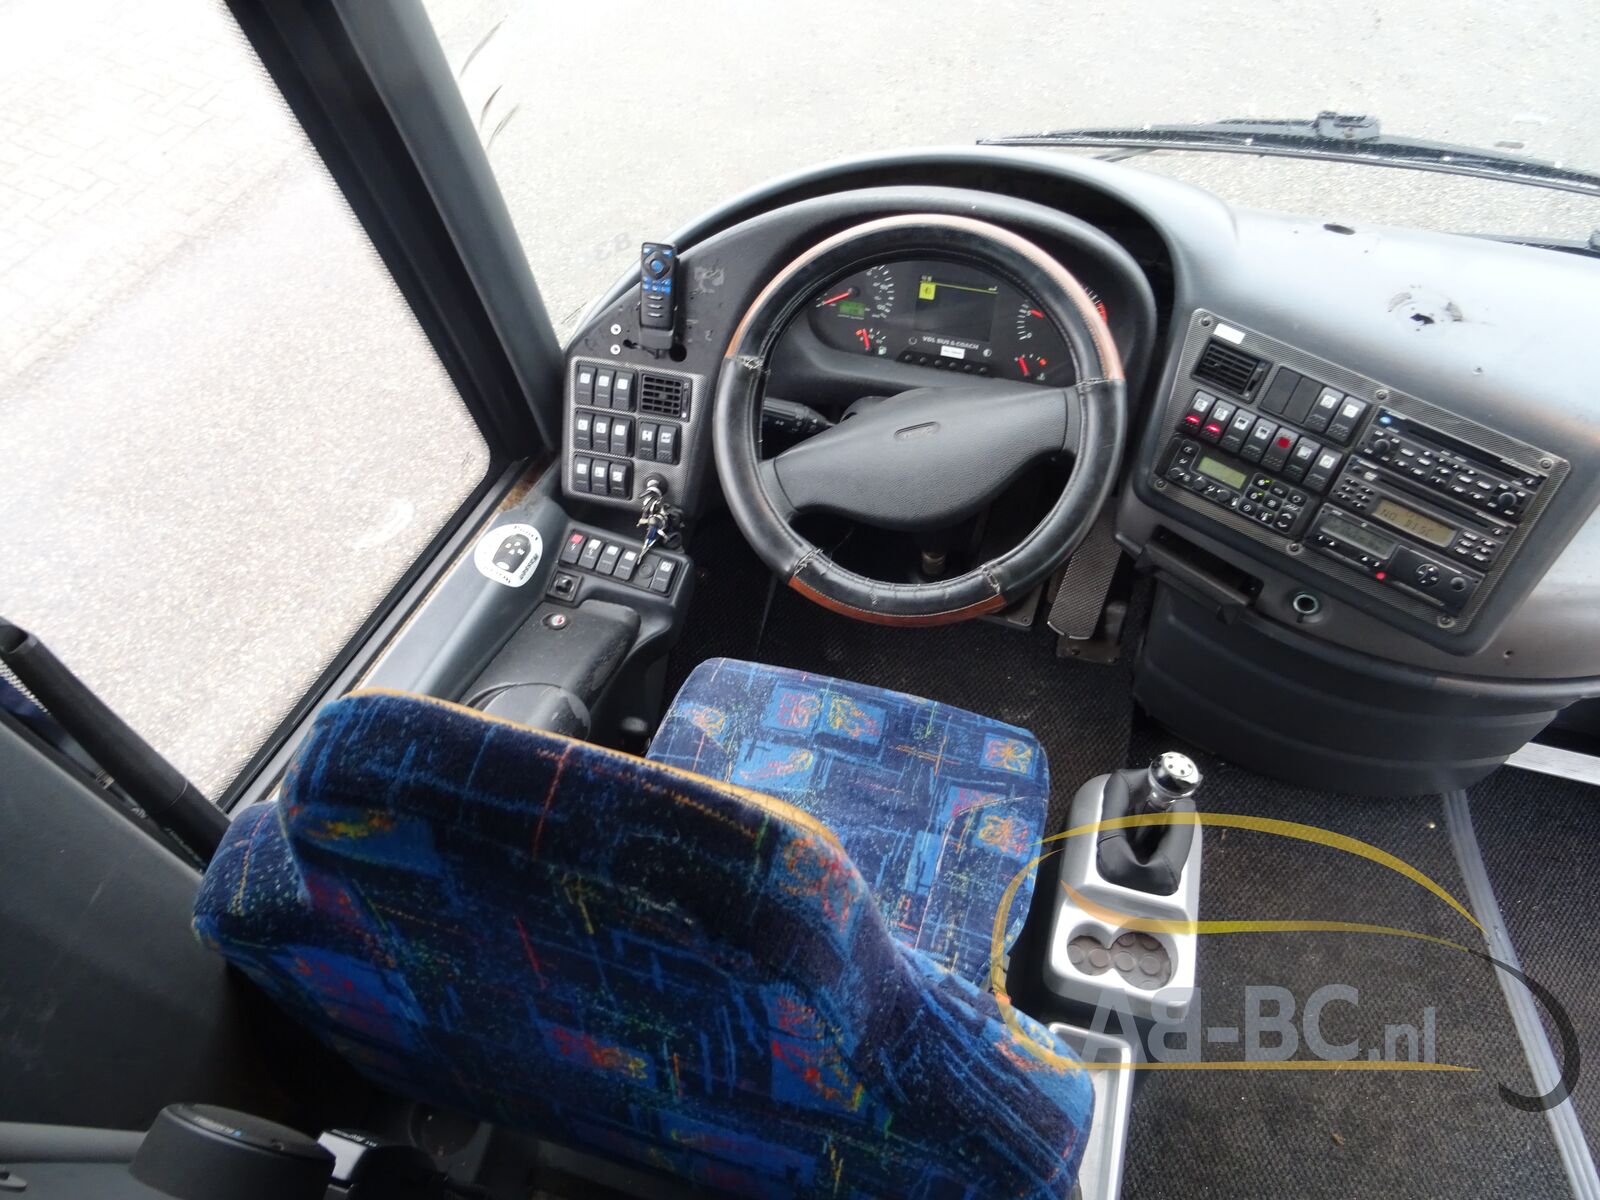 coach-bus-VDL-BOVA-Magiq-61-Seats---1641303542409430861_orig_5d351133405d2580642e55e75f4635c7--22010415282369368500